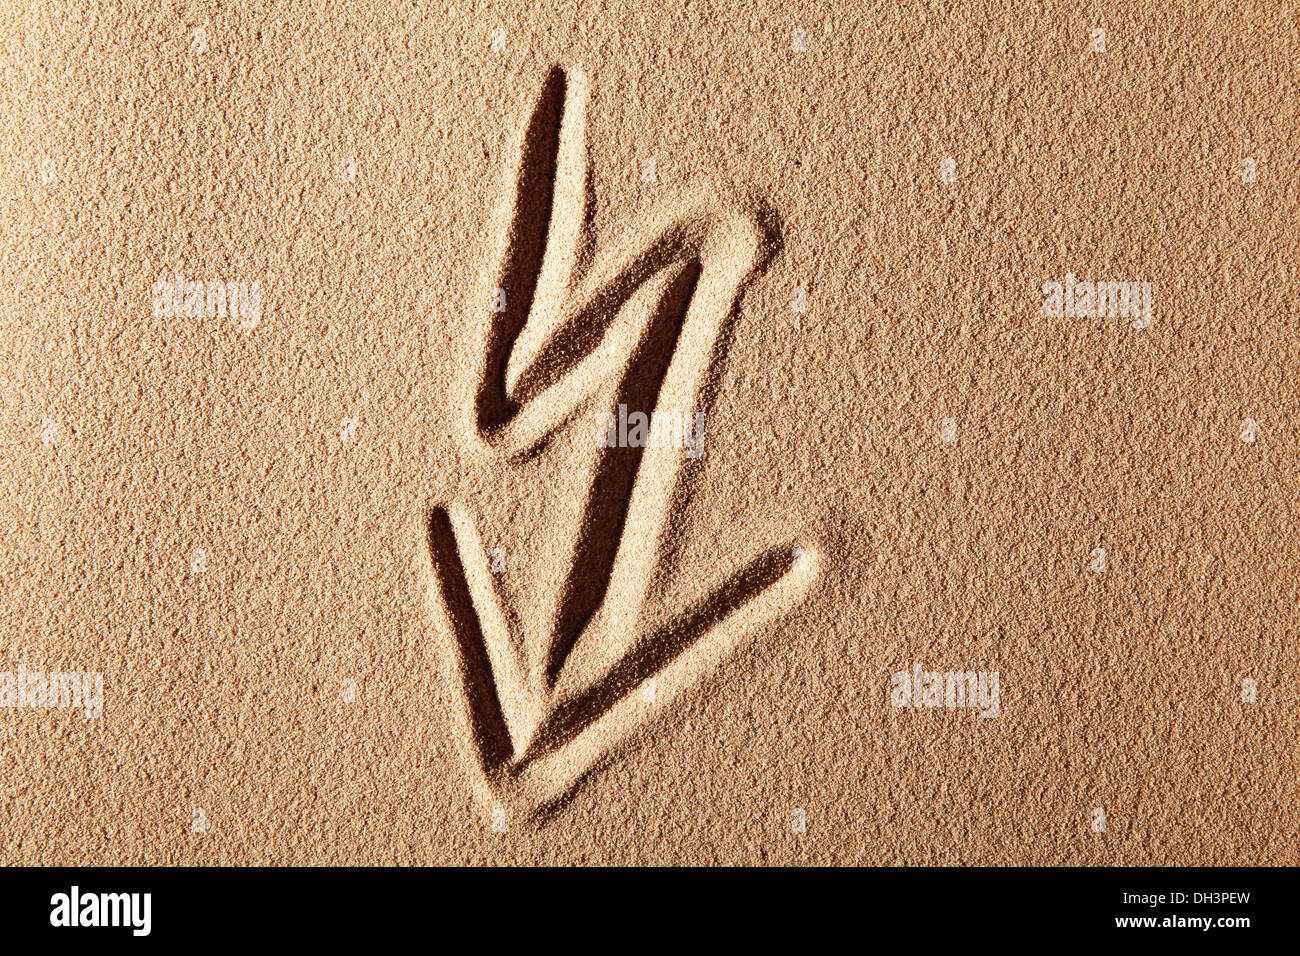 Éclair, symbole de la puissance, dessiné dans le sable Banque D'Images